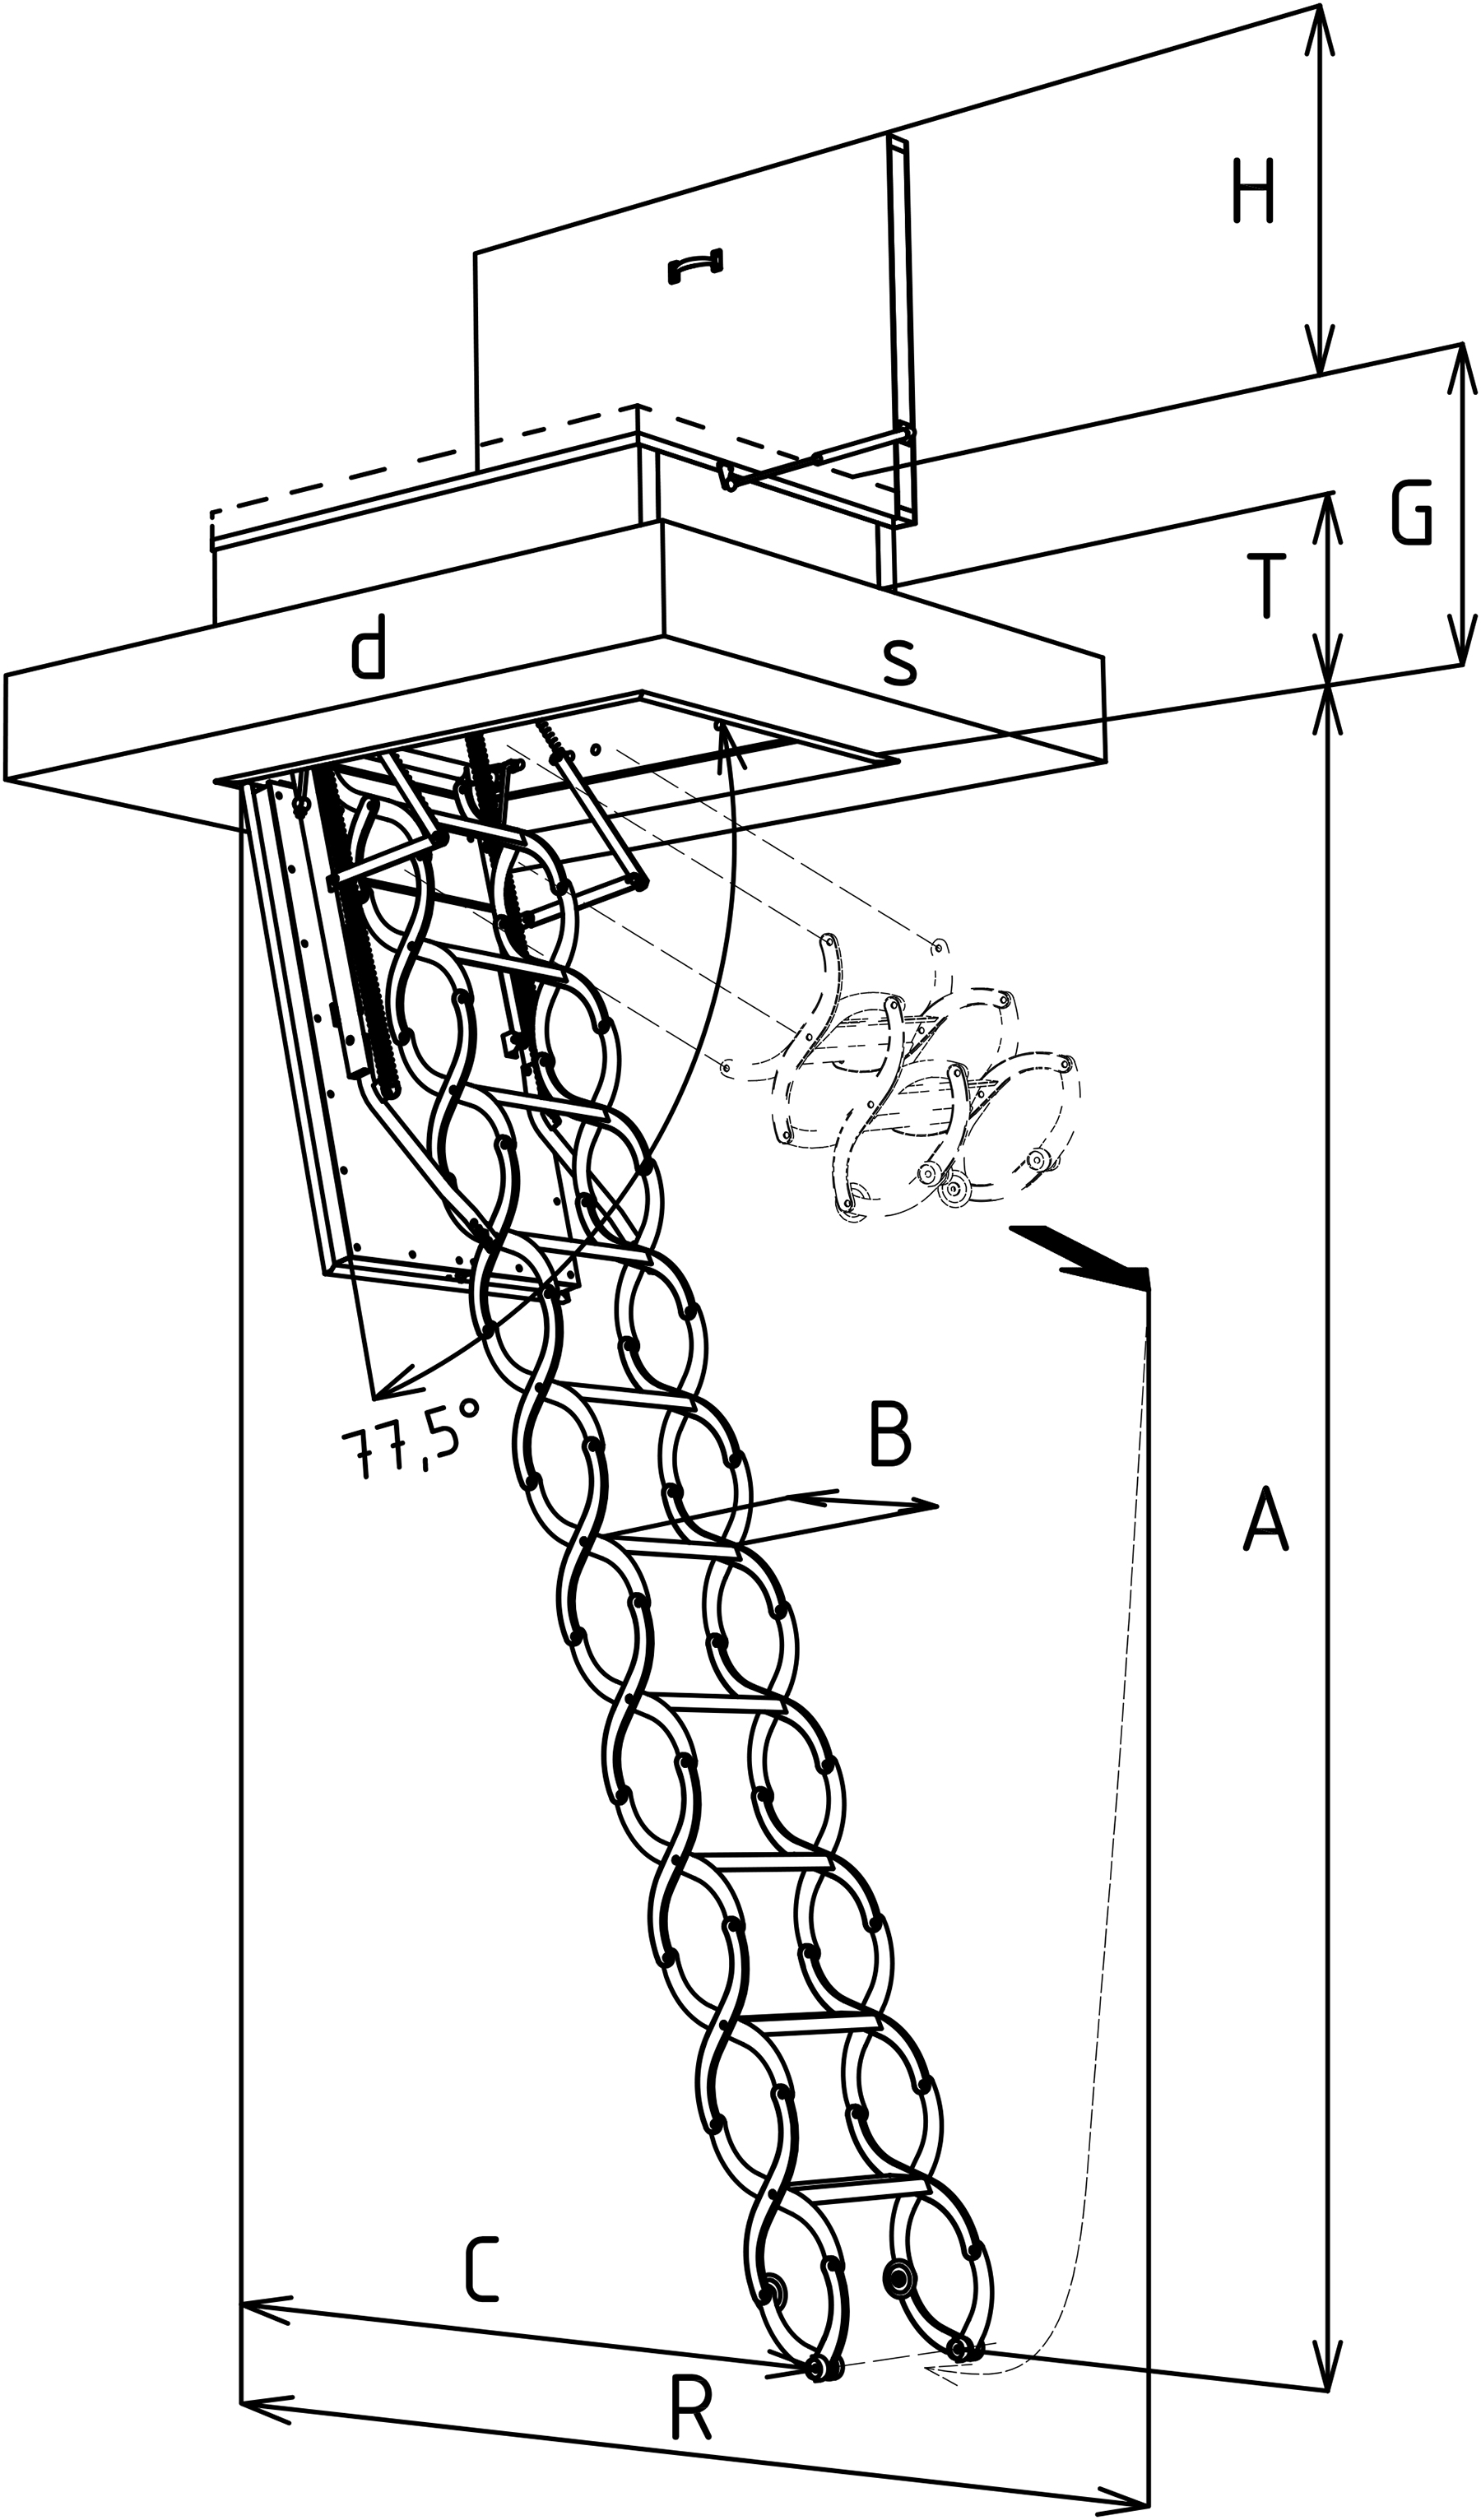 Technický výkres sťahovacích schodov KOMBO